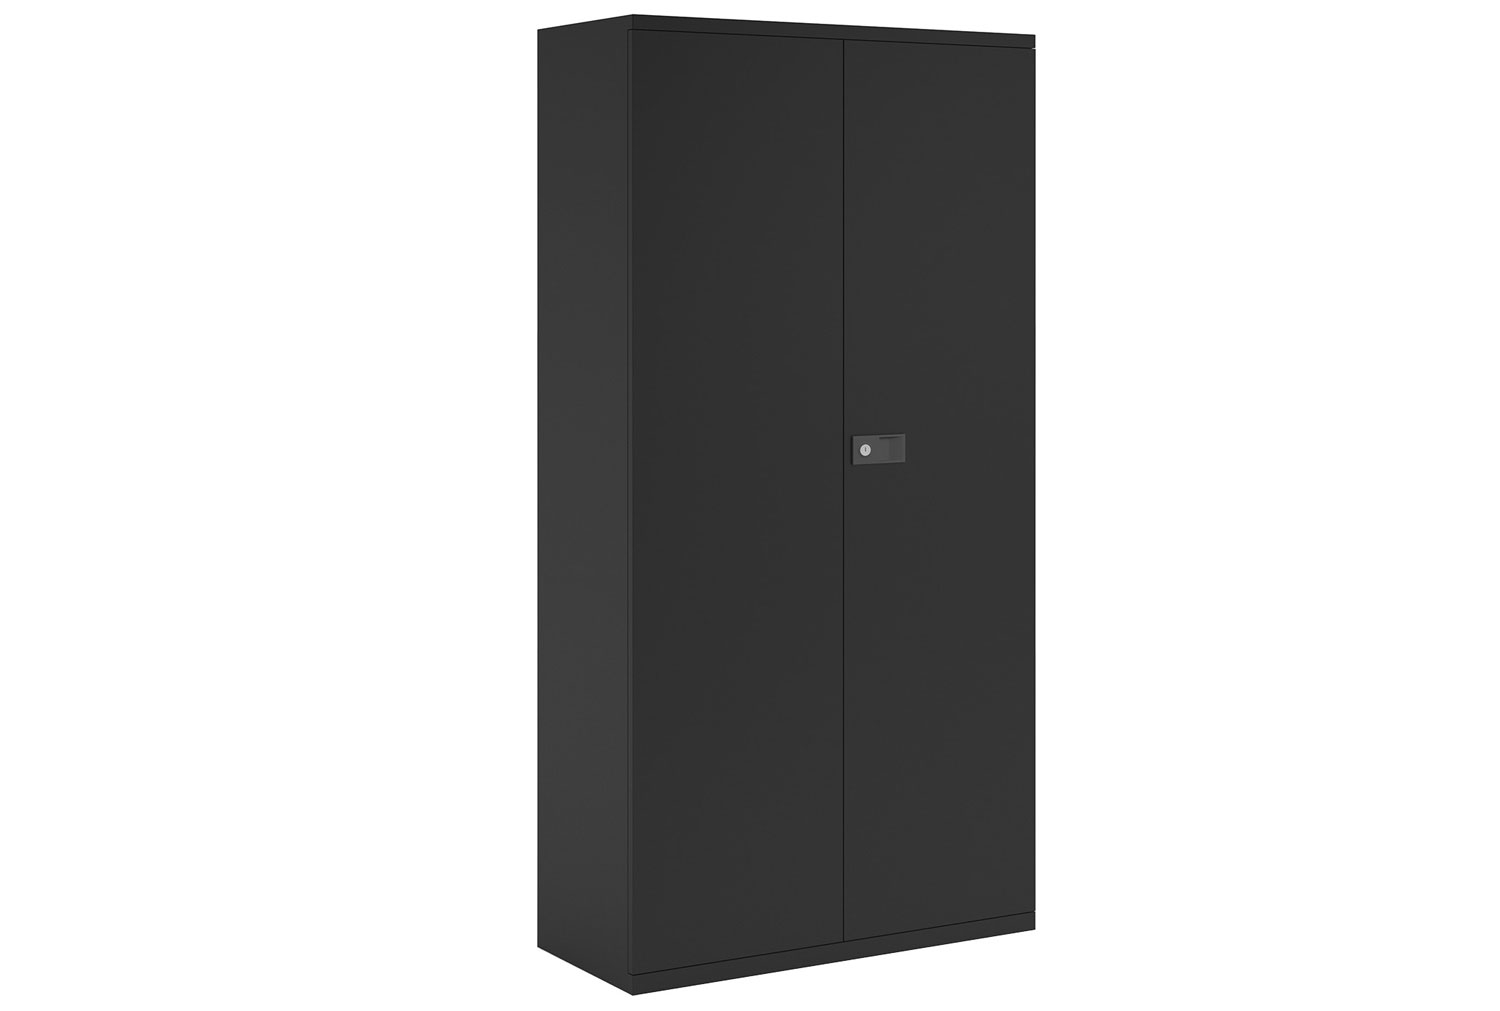 Bisley Economy Double Door Steel Office Cupboards, 4 Shelf - 91wx40dx197h (cm), Black, Fully Installed